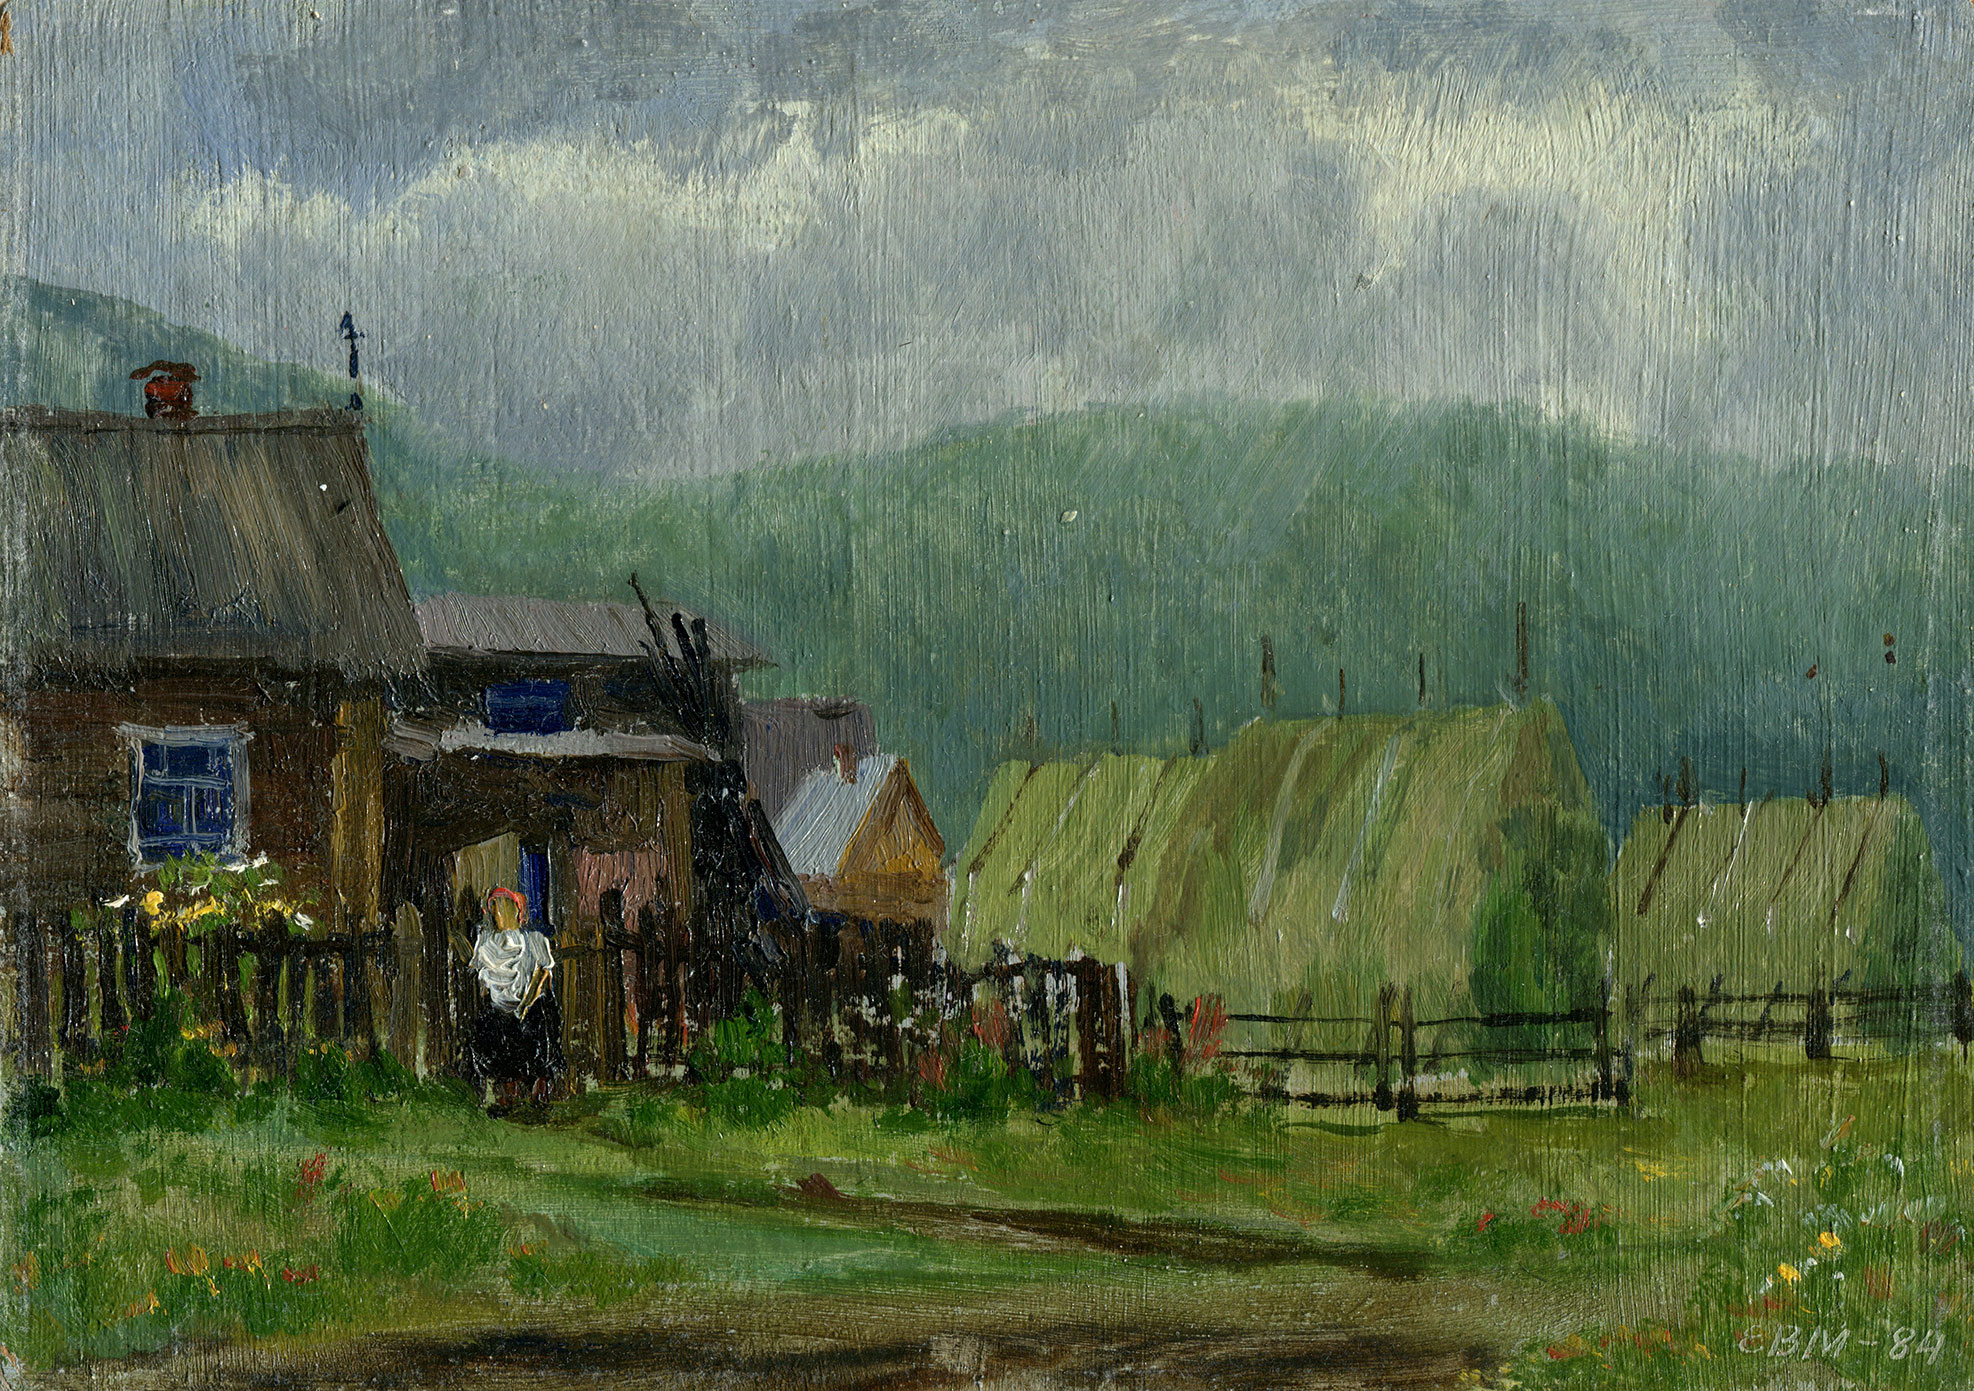 The Village of Kyshtym - 1, Valentin Efremov, Buy the painting Oil